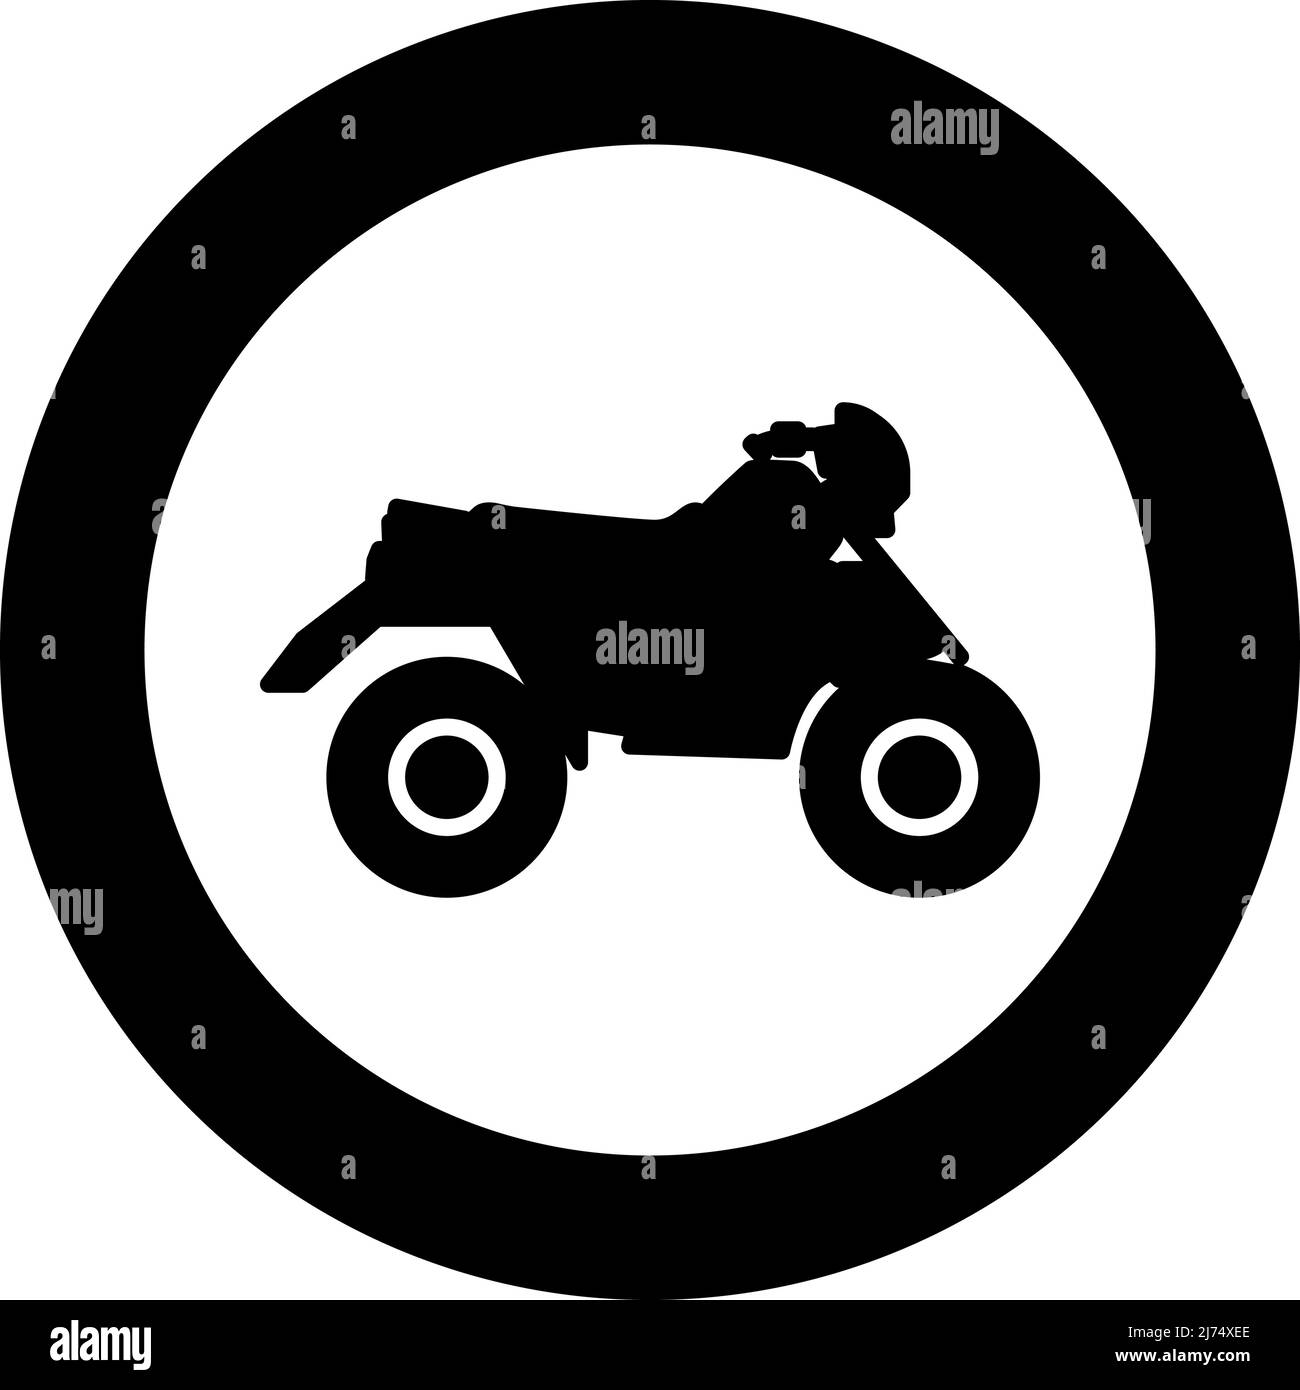 Quad Bike ATV Moto für Fahrt Rennen alle Gelände Fahrzeug Symbol im Kreis Runde schwarze Farbe Vektor Illustration Bild solide Kontur Stil einfach Stock Vektor